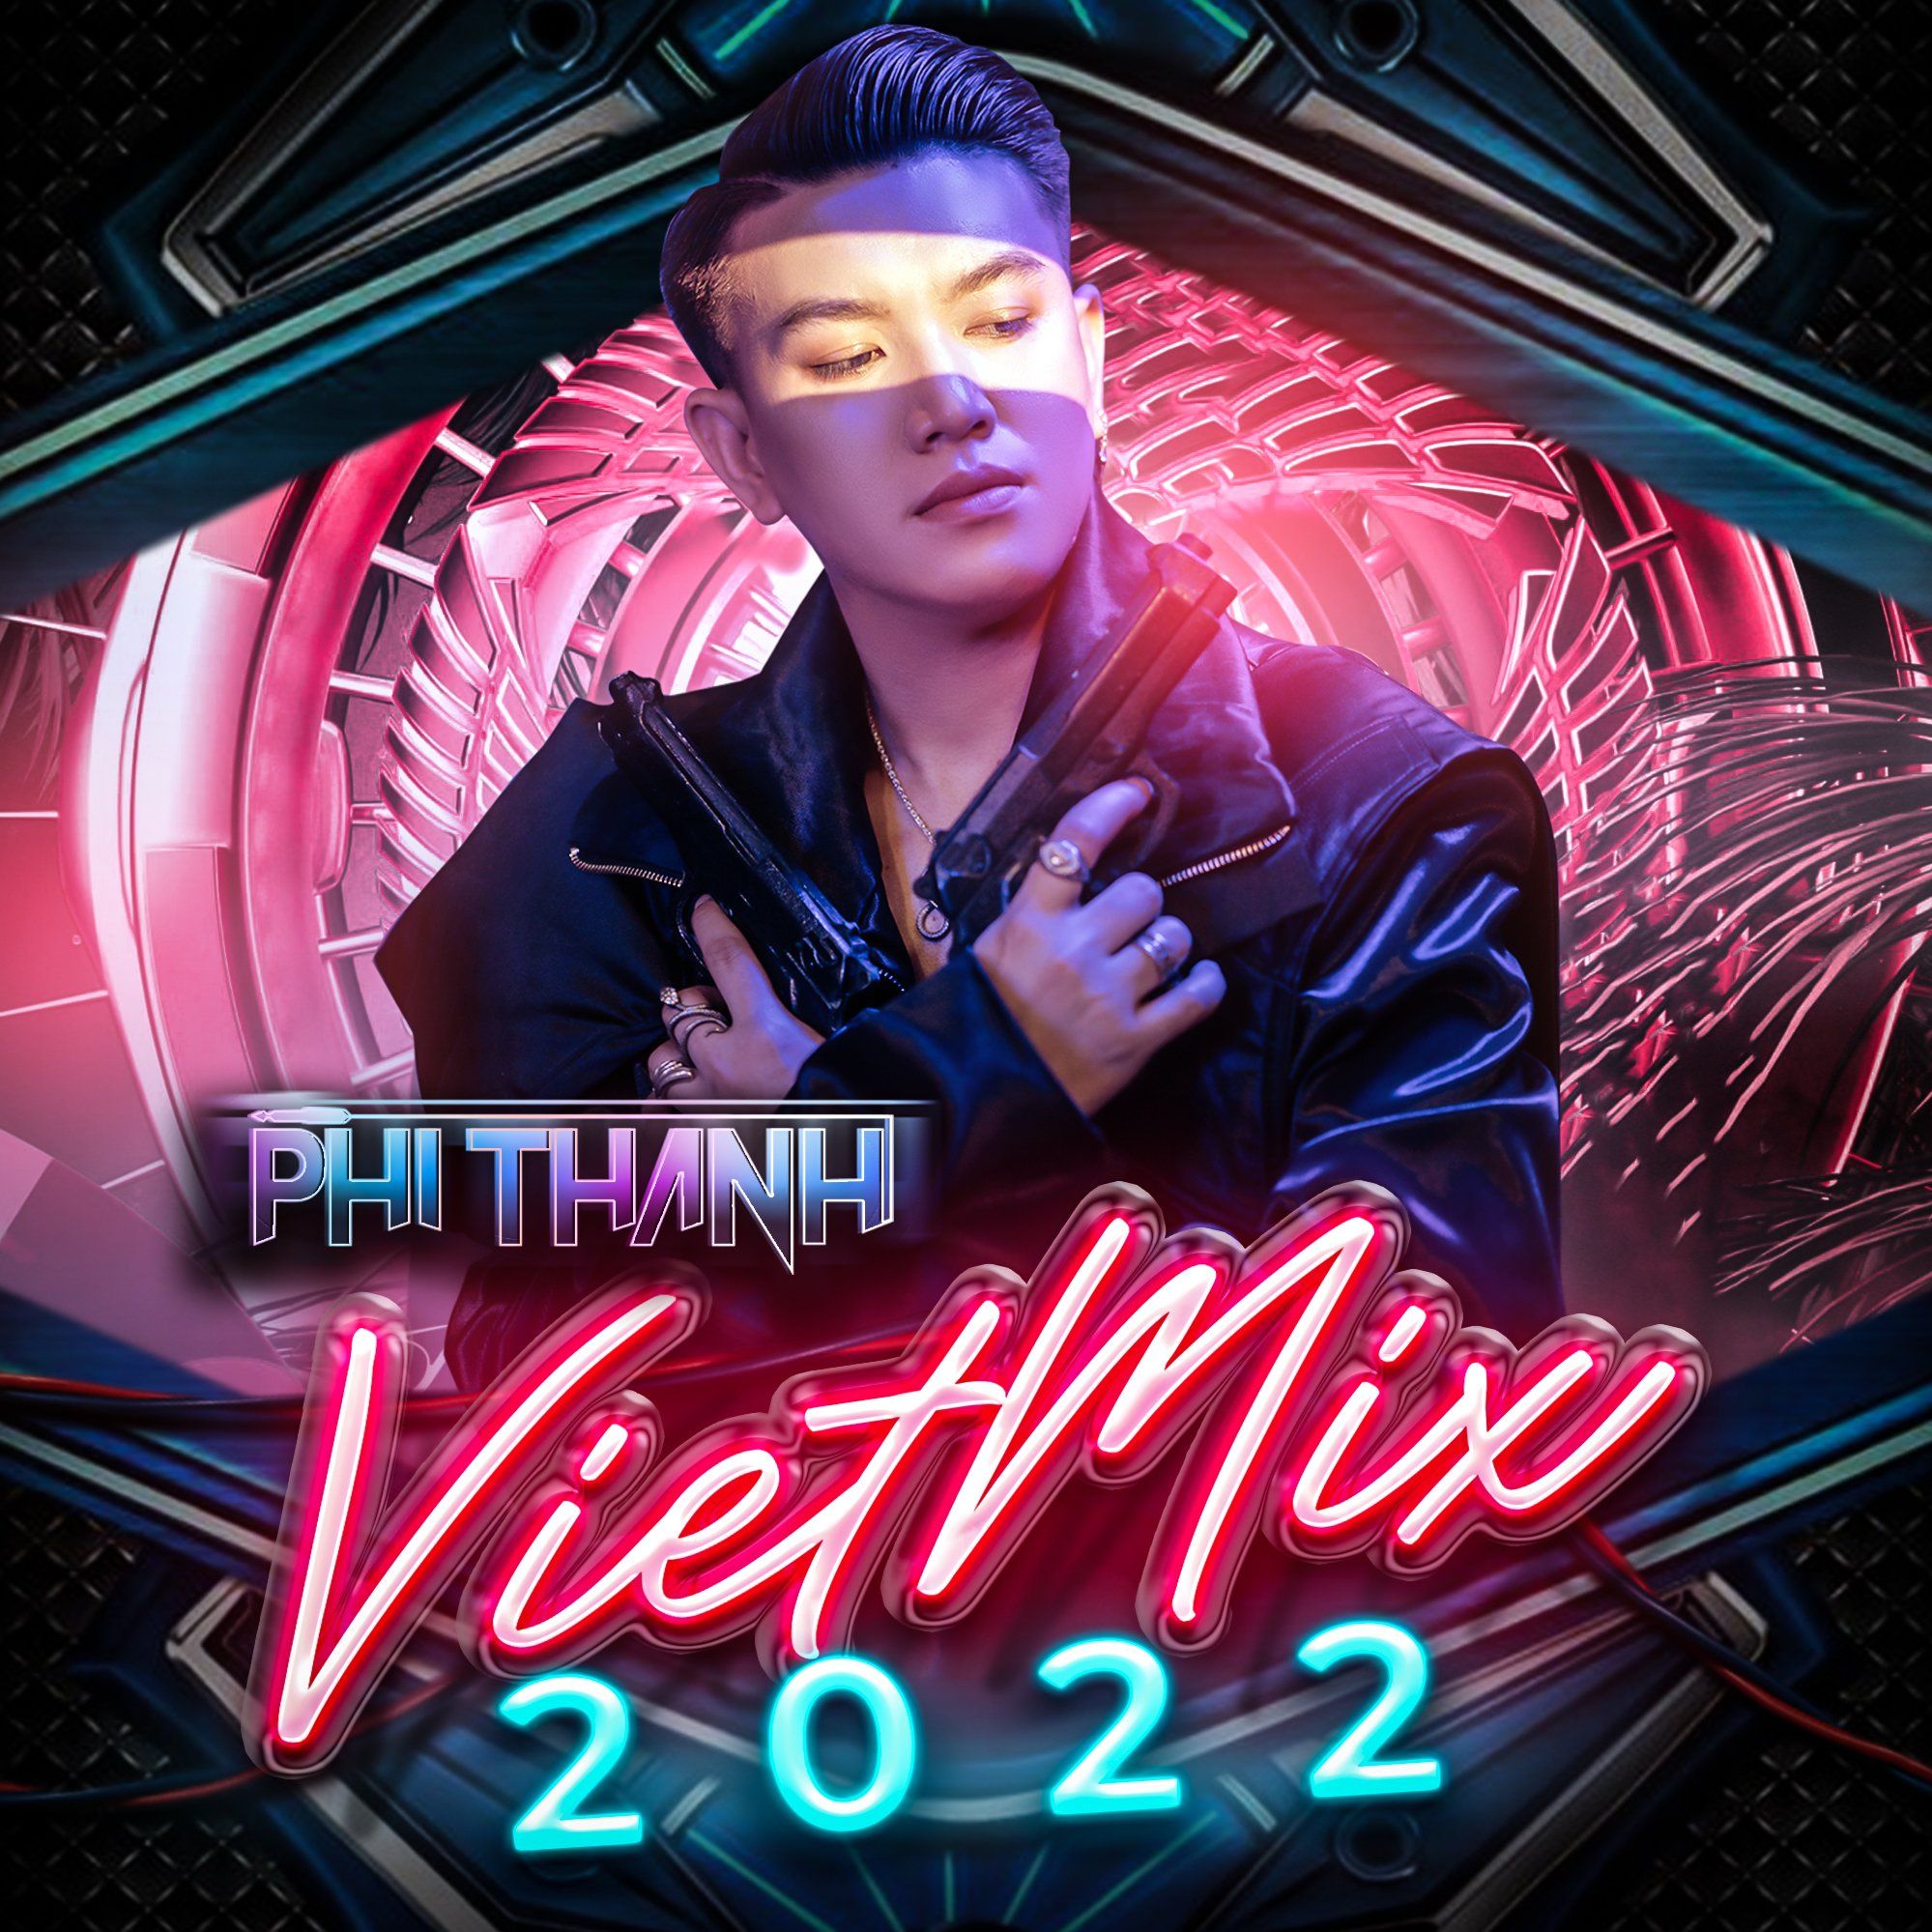 Sii mai Viet Mix 2022 By Phi Thành